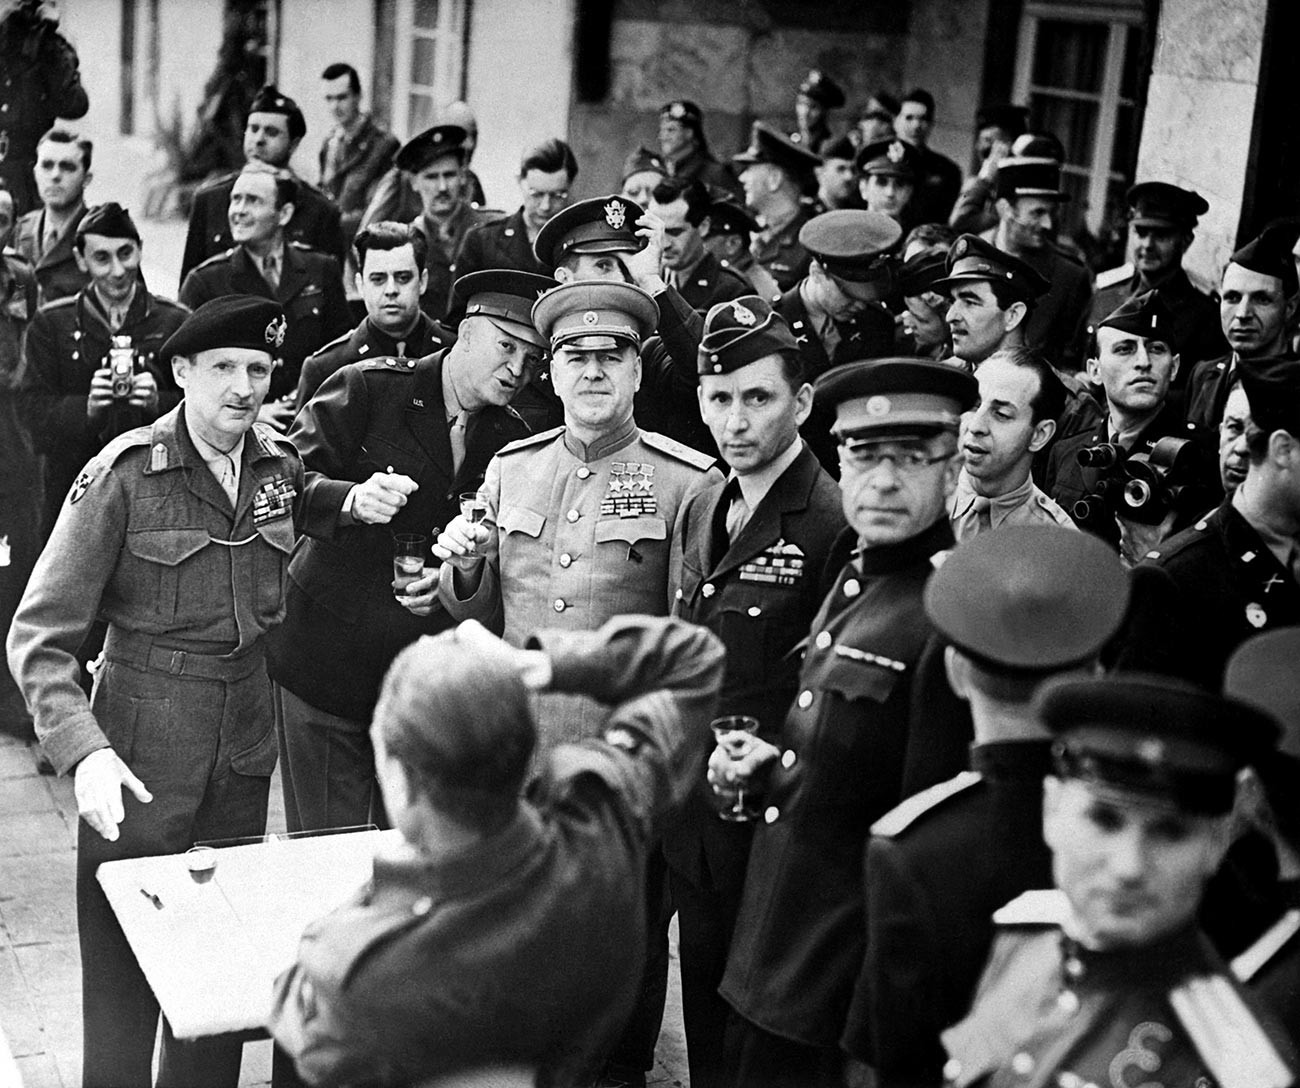 Marsekal Lapangan Inggris Bernard Montgomery (kiri, mengenakan baret) dianugerahi 'Orde Kemenangan' pada 5 Juni 1945. Jenderal Amerika Dwight Eisenhower dan marsekal lapangan Soviet Georgy Zhukov, yang juga penerima Orde Kemenangan, berada di sebelah kanan Montgomery.